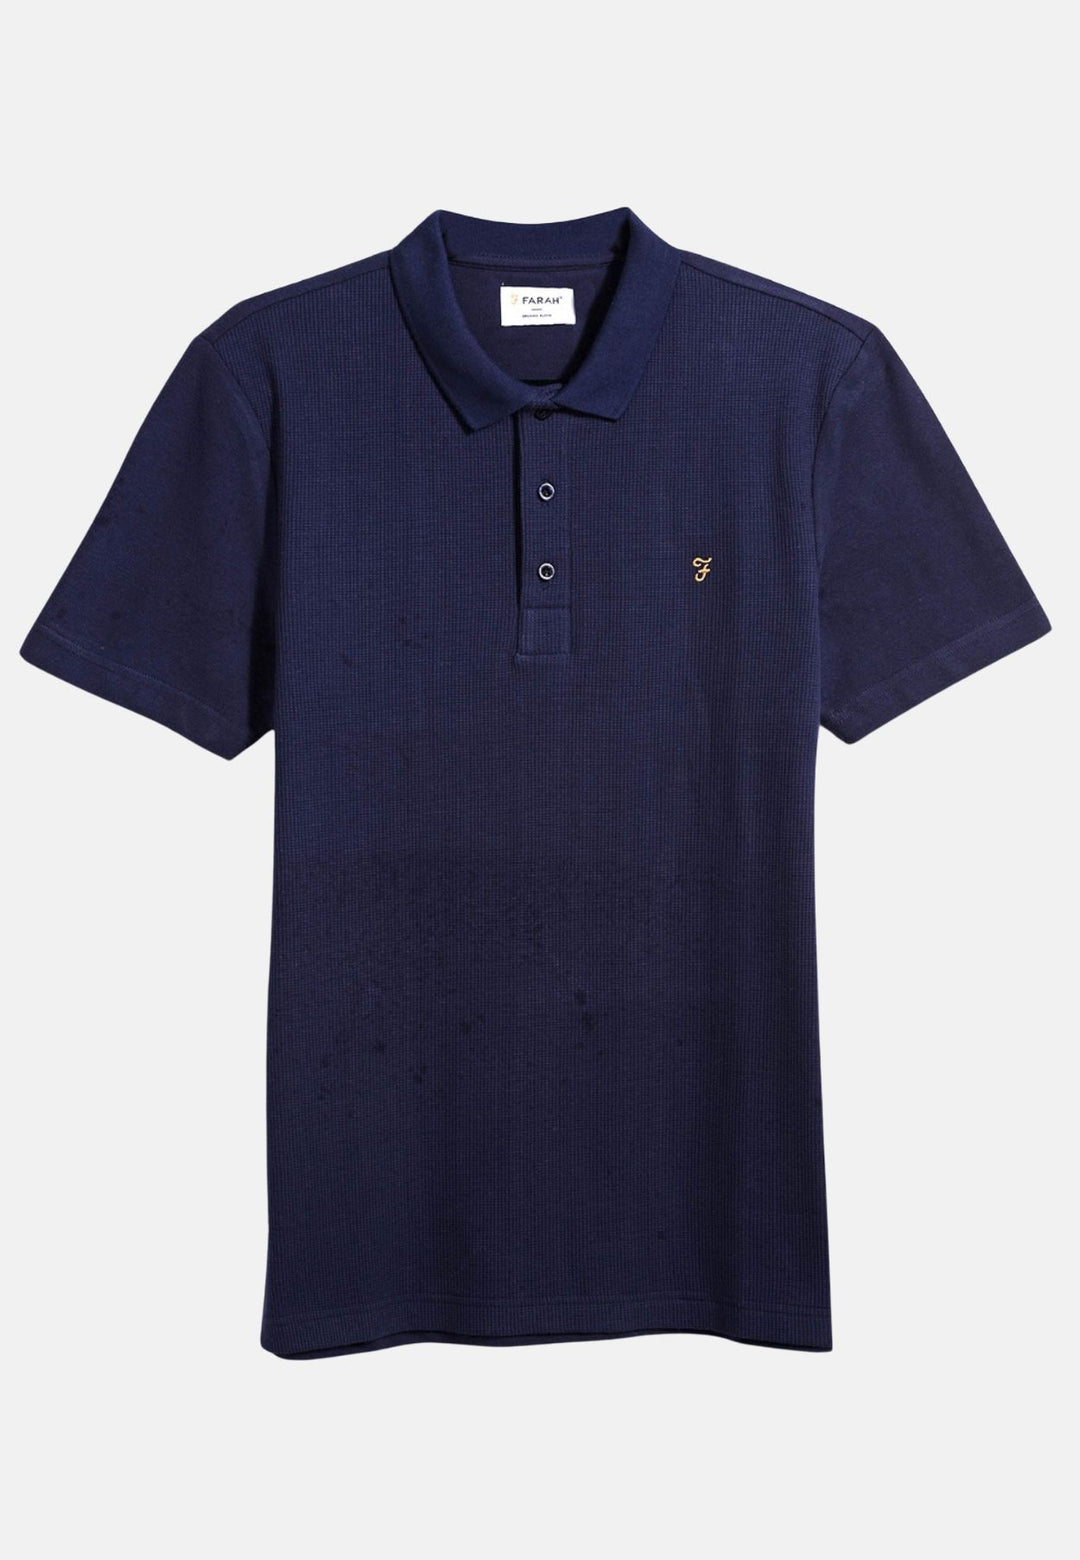 Men's Farah Forster Textured Polo Shirt in Indigo